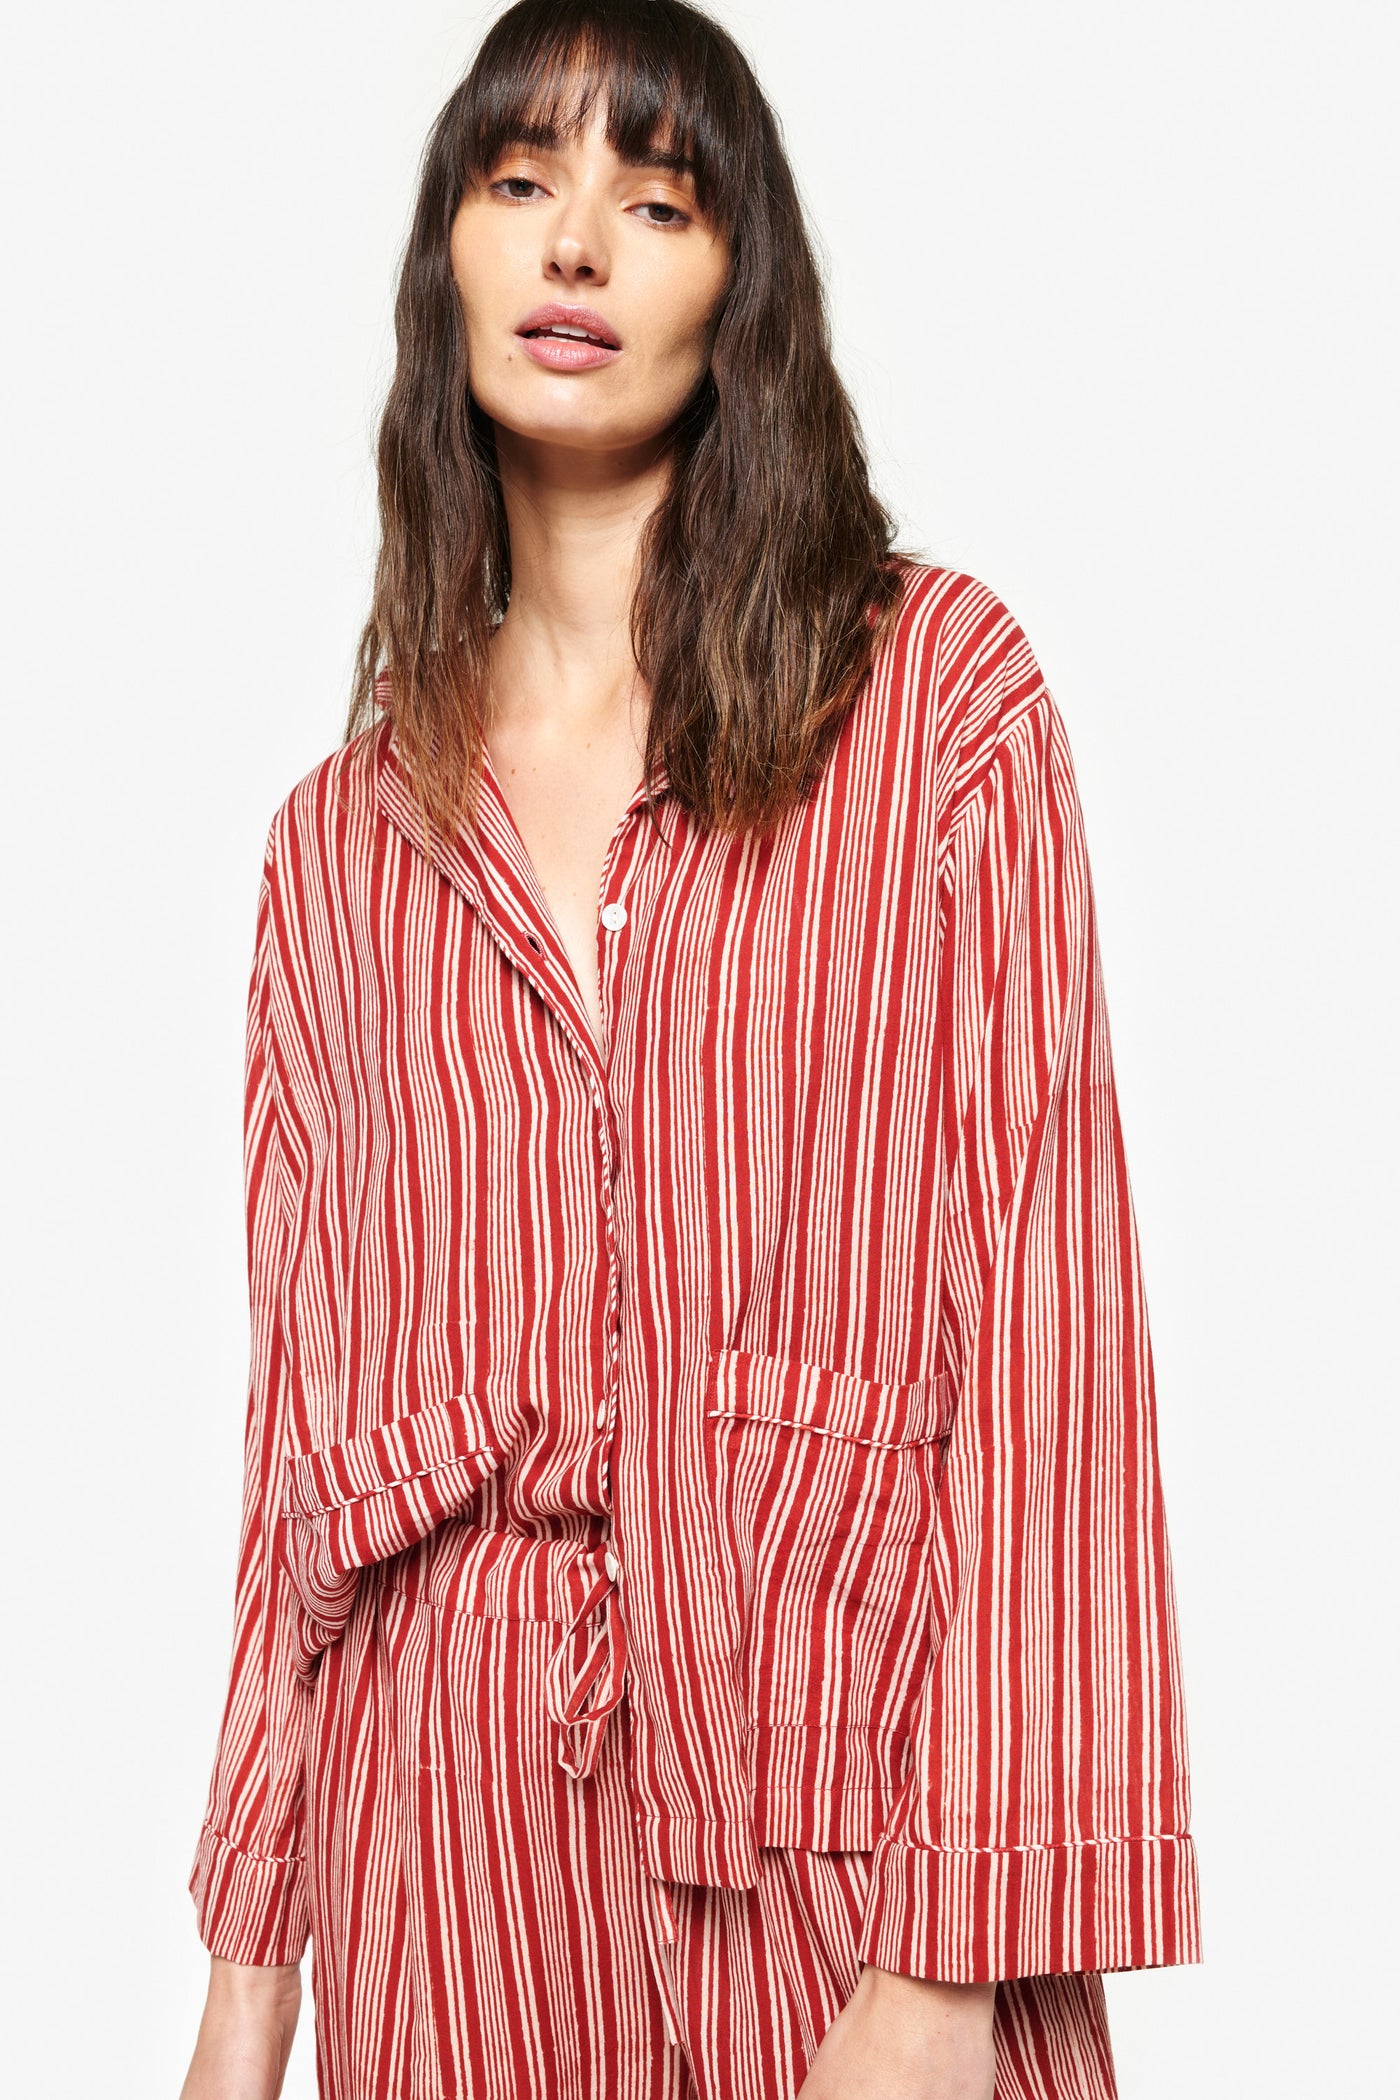 Red Stripe Pajamas